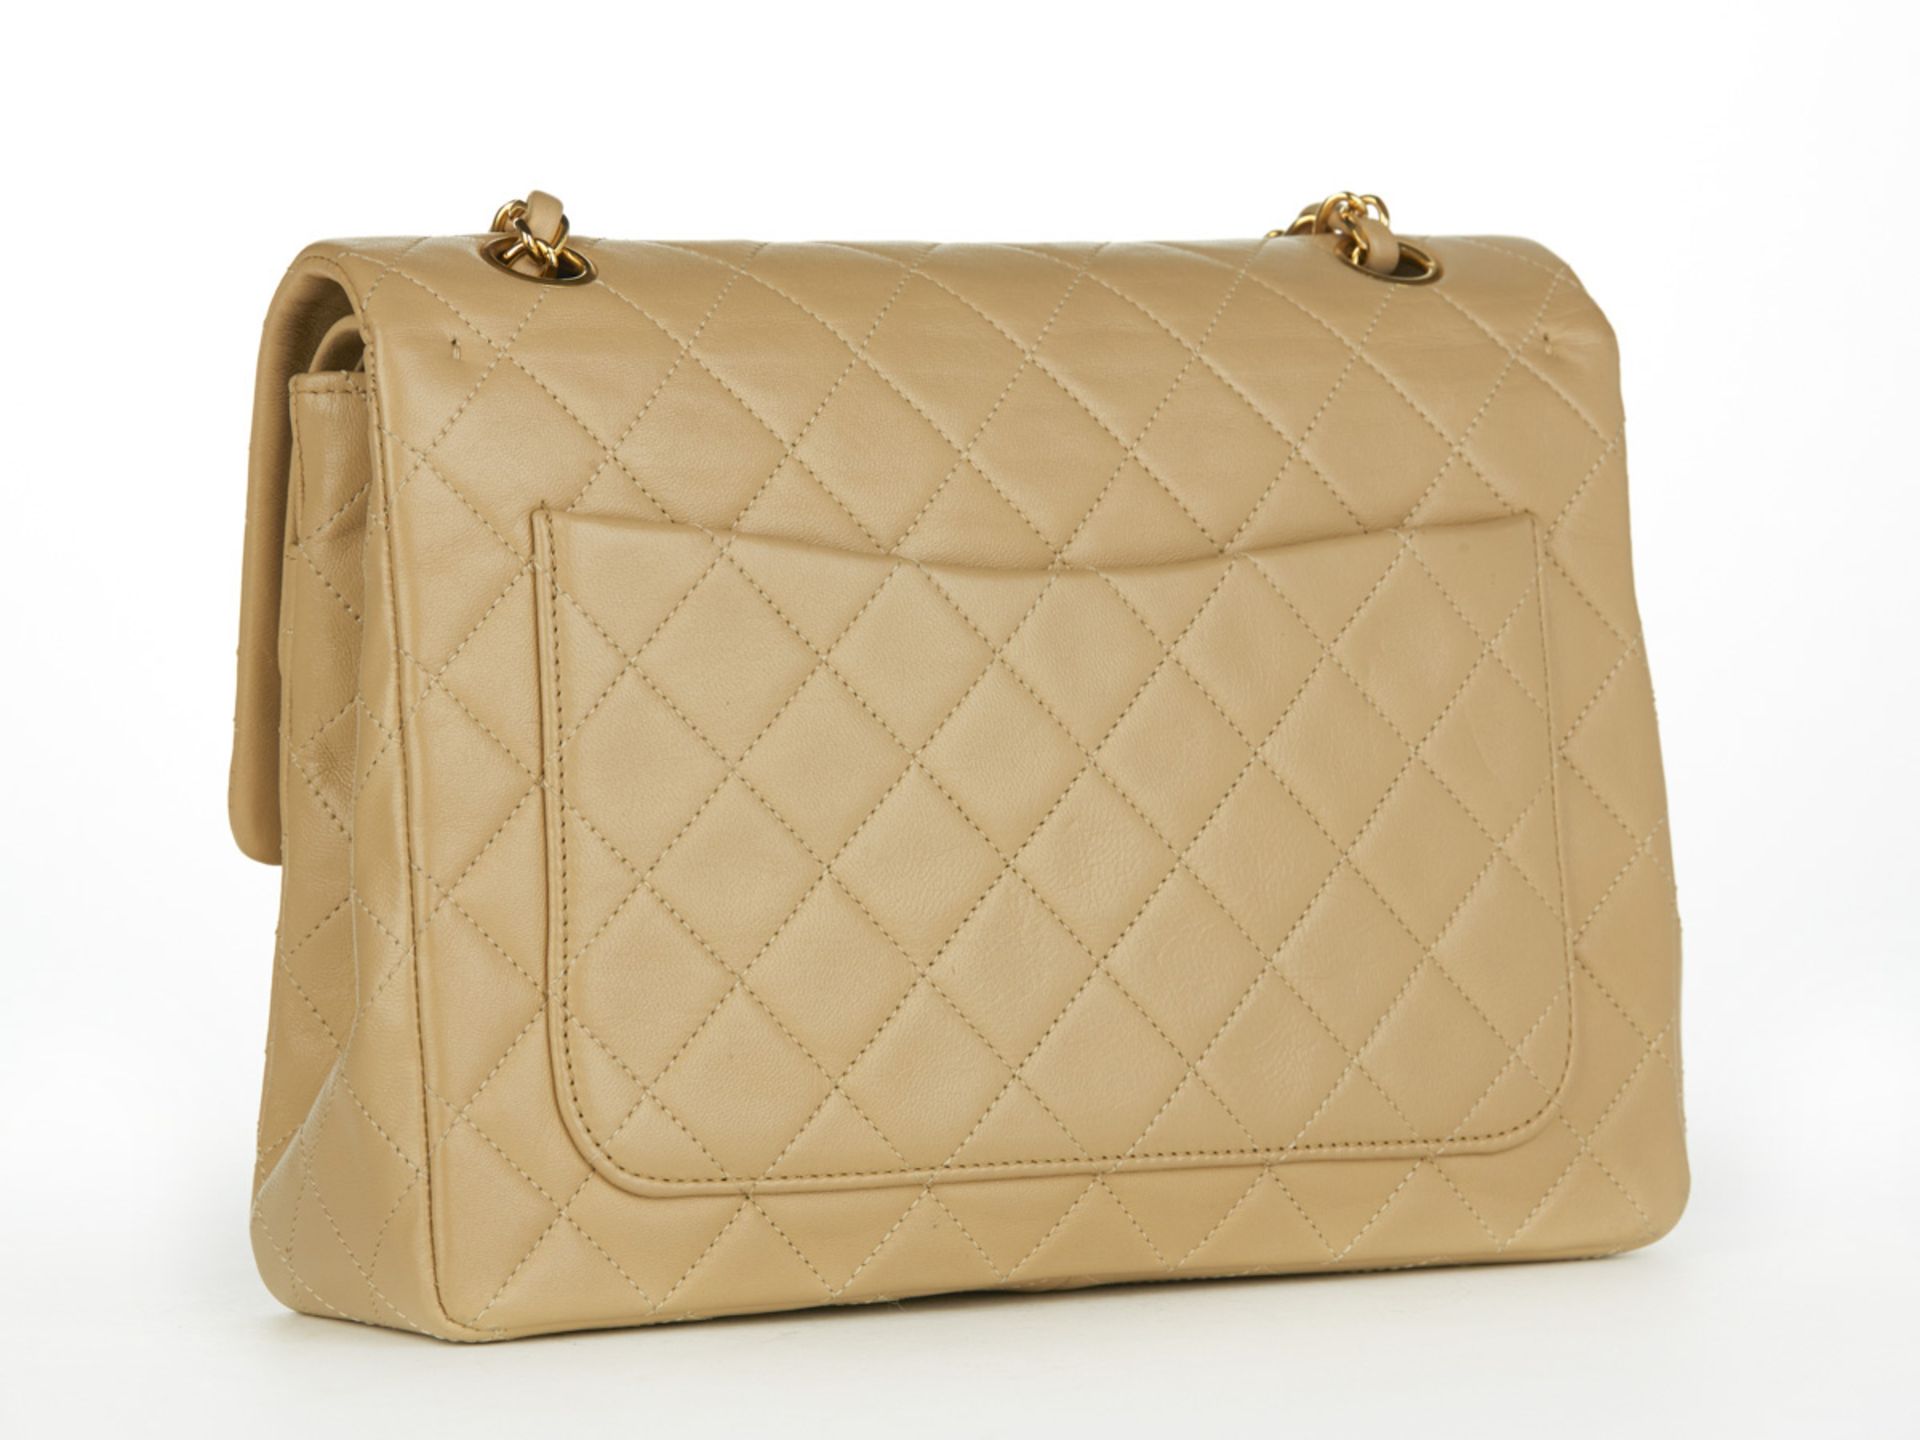 HB097 Chanel - Jumbo Classic Double Flap Bag - Image 3 of 10